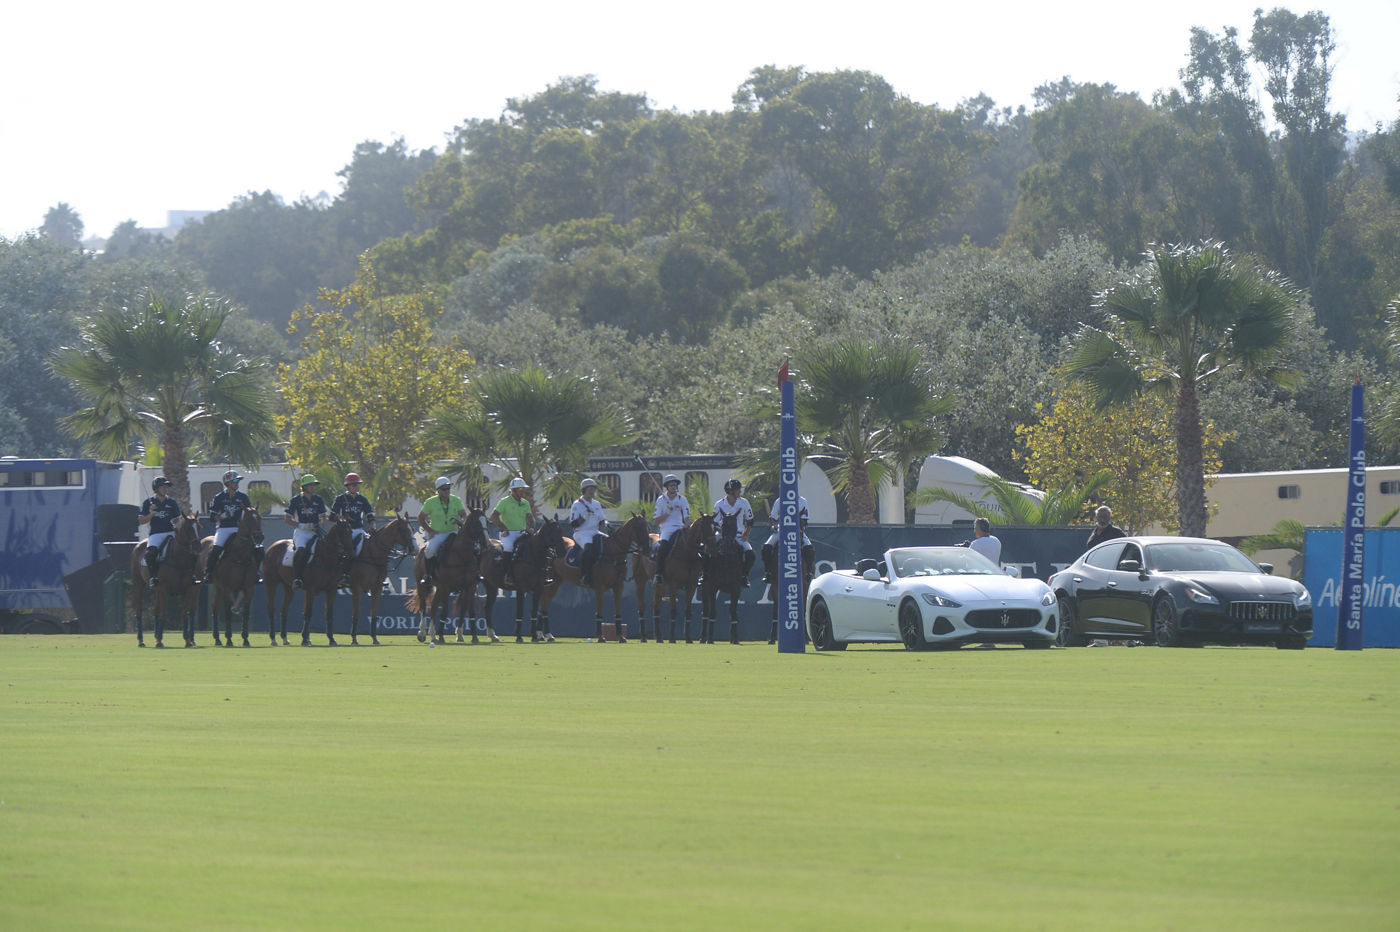 Jugadores de polo dentro del campo patrocinado por Maserati